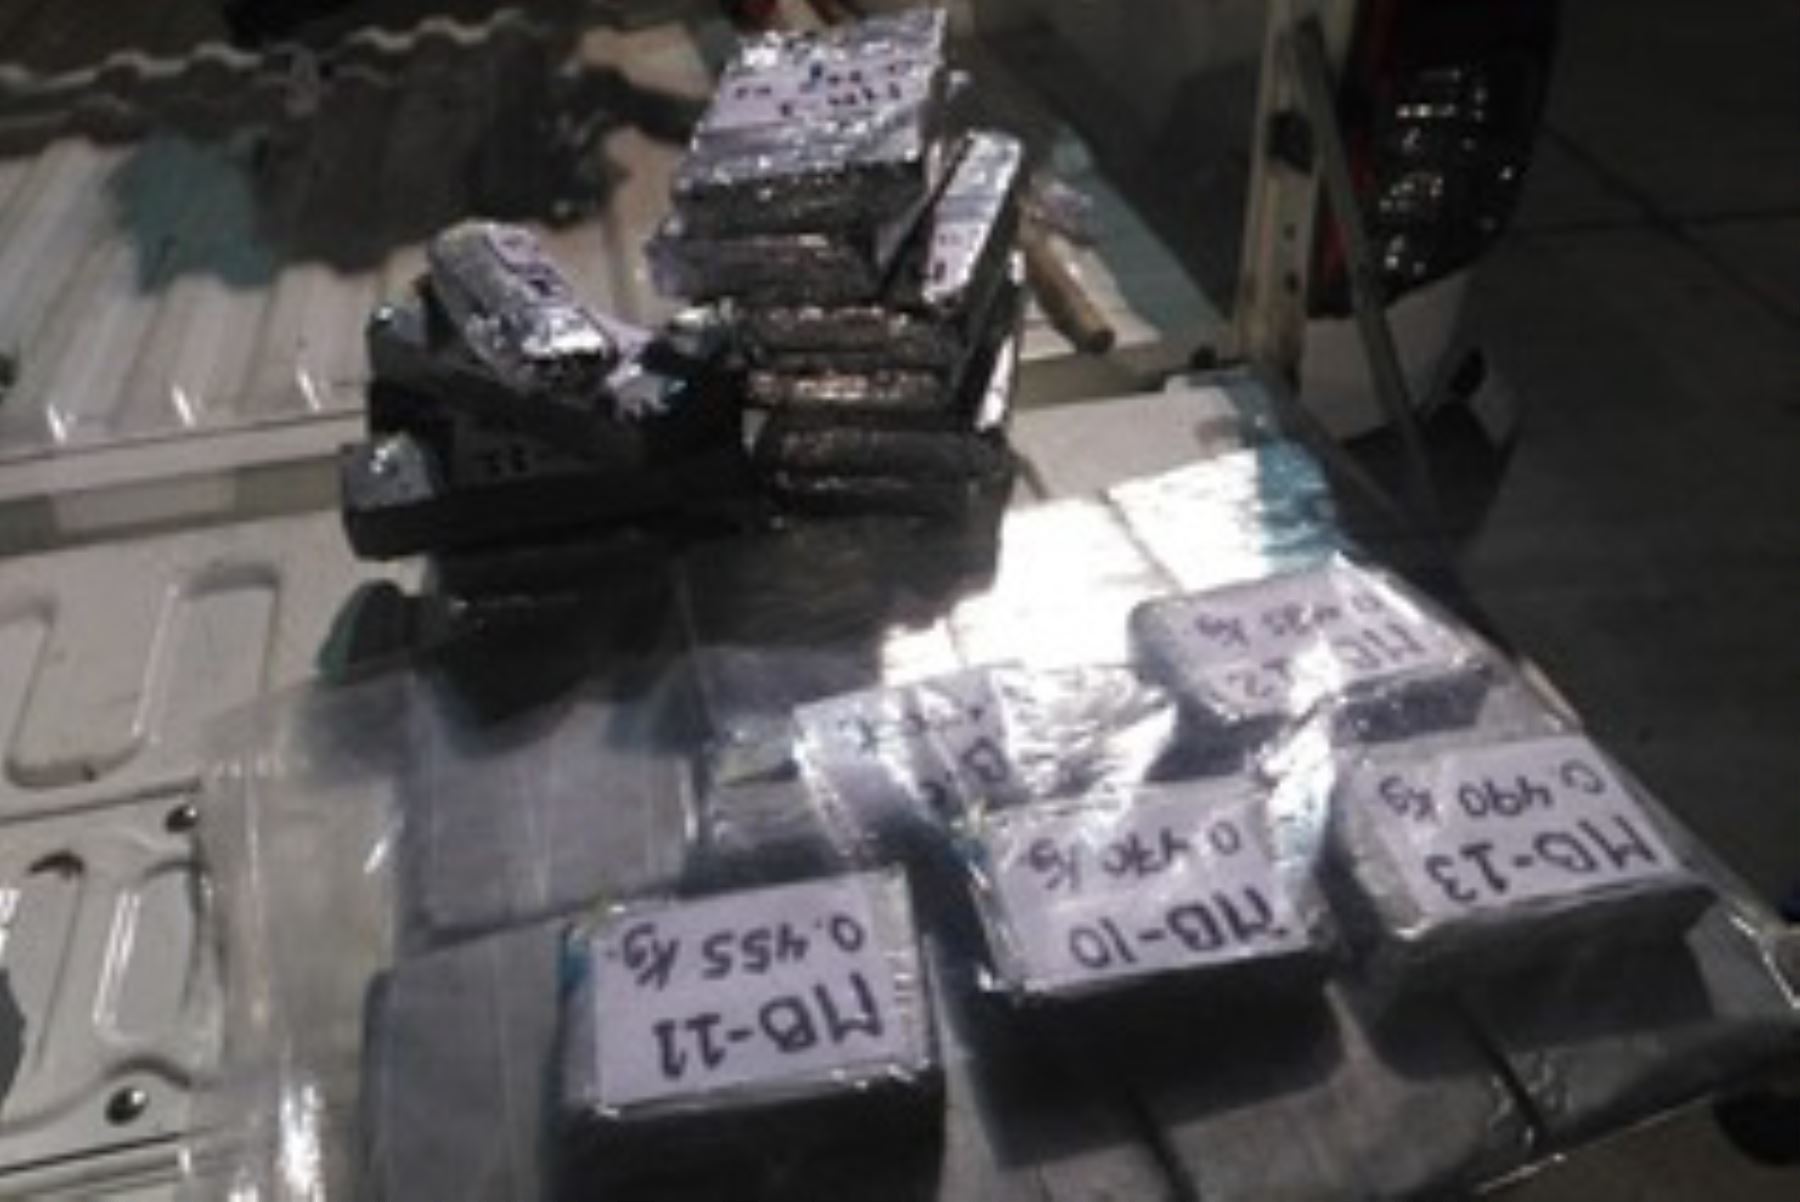 Efectivos policiales contabilizaron 53 paquetes tipo ladrillo, que pesaban 39 kilos con 645 gramos de droga.